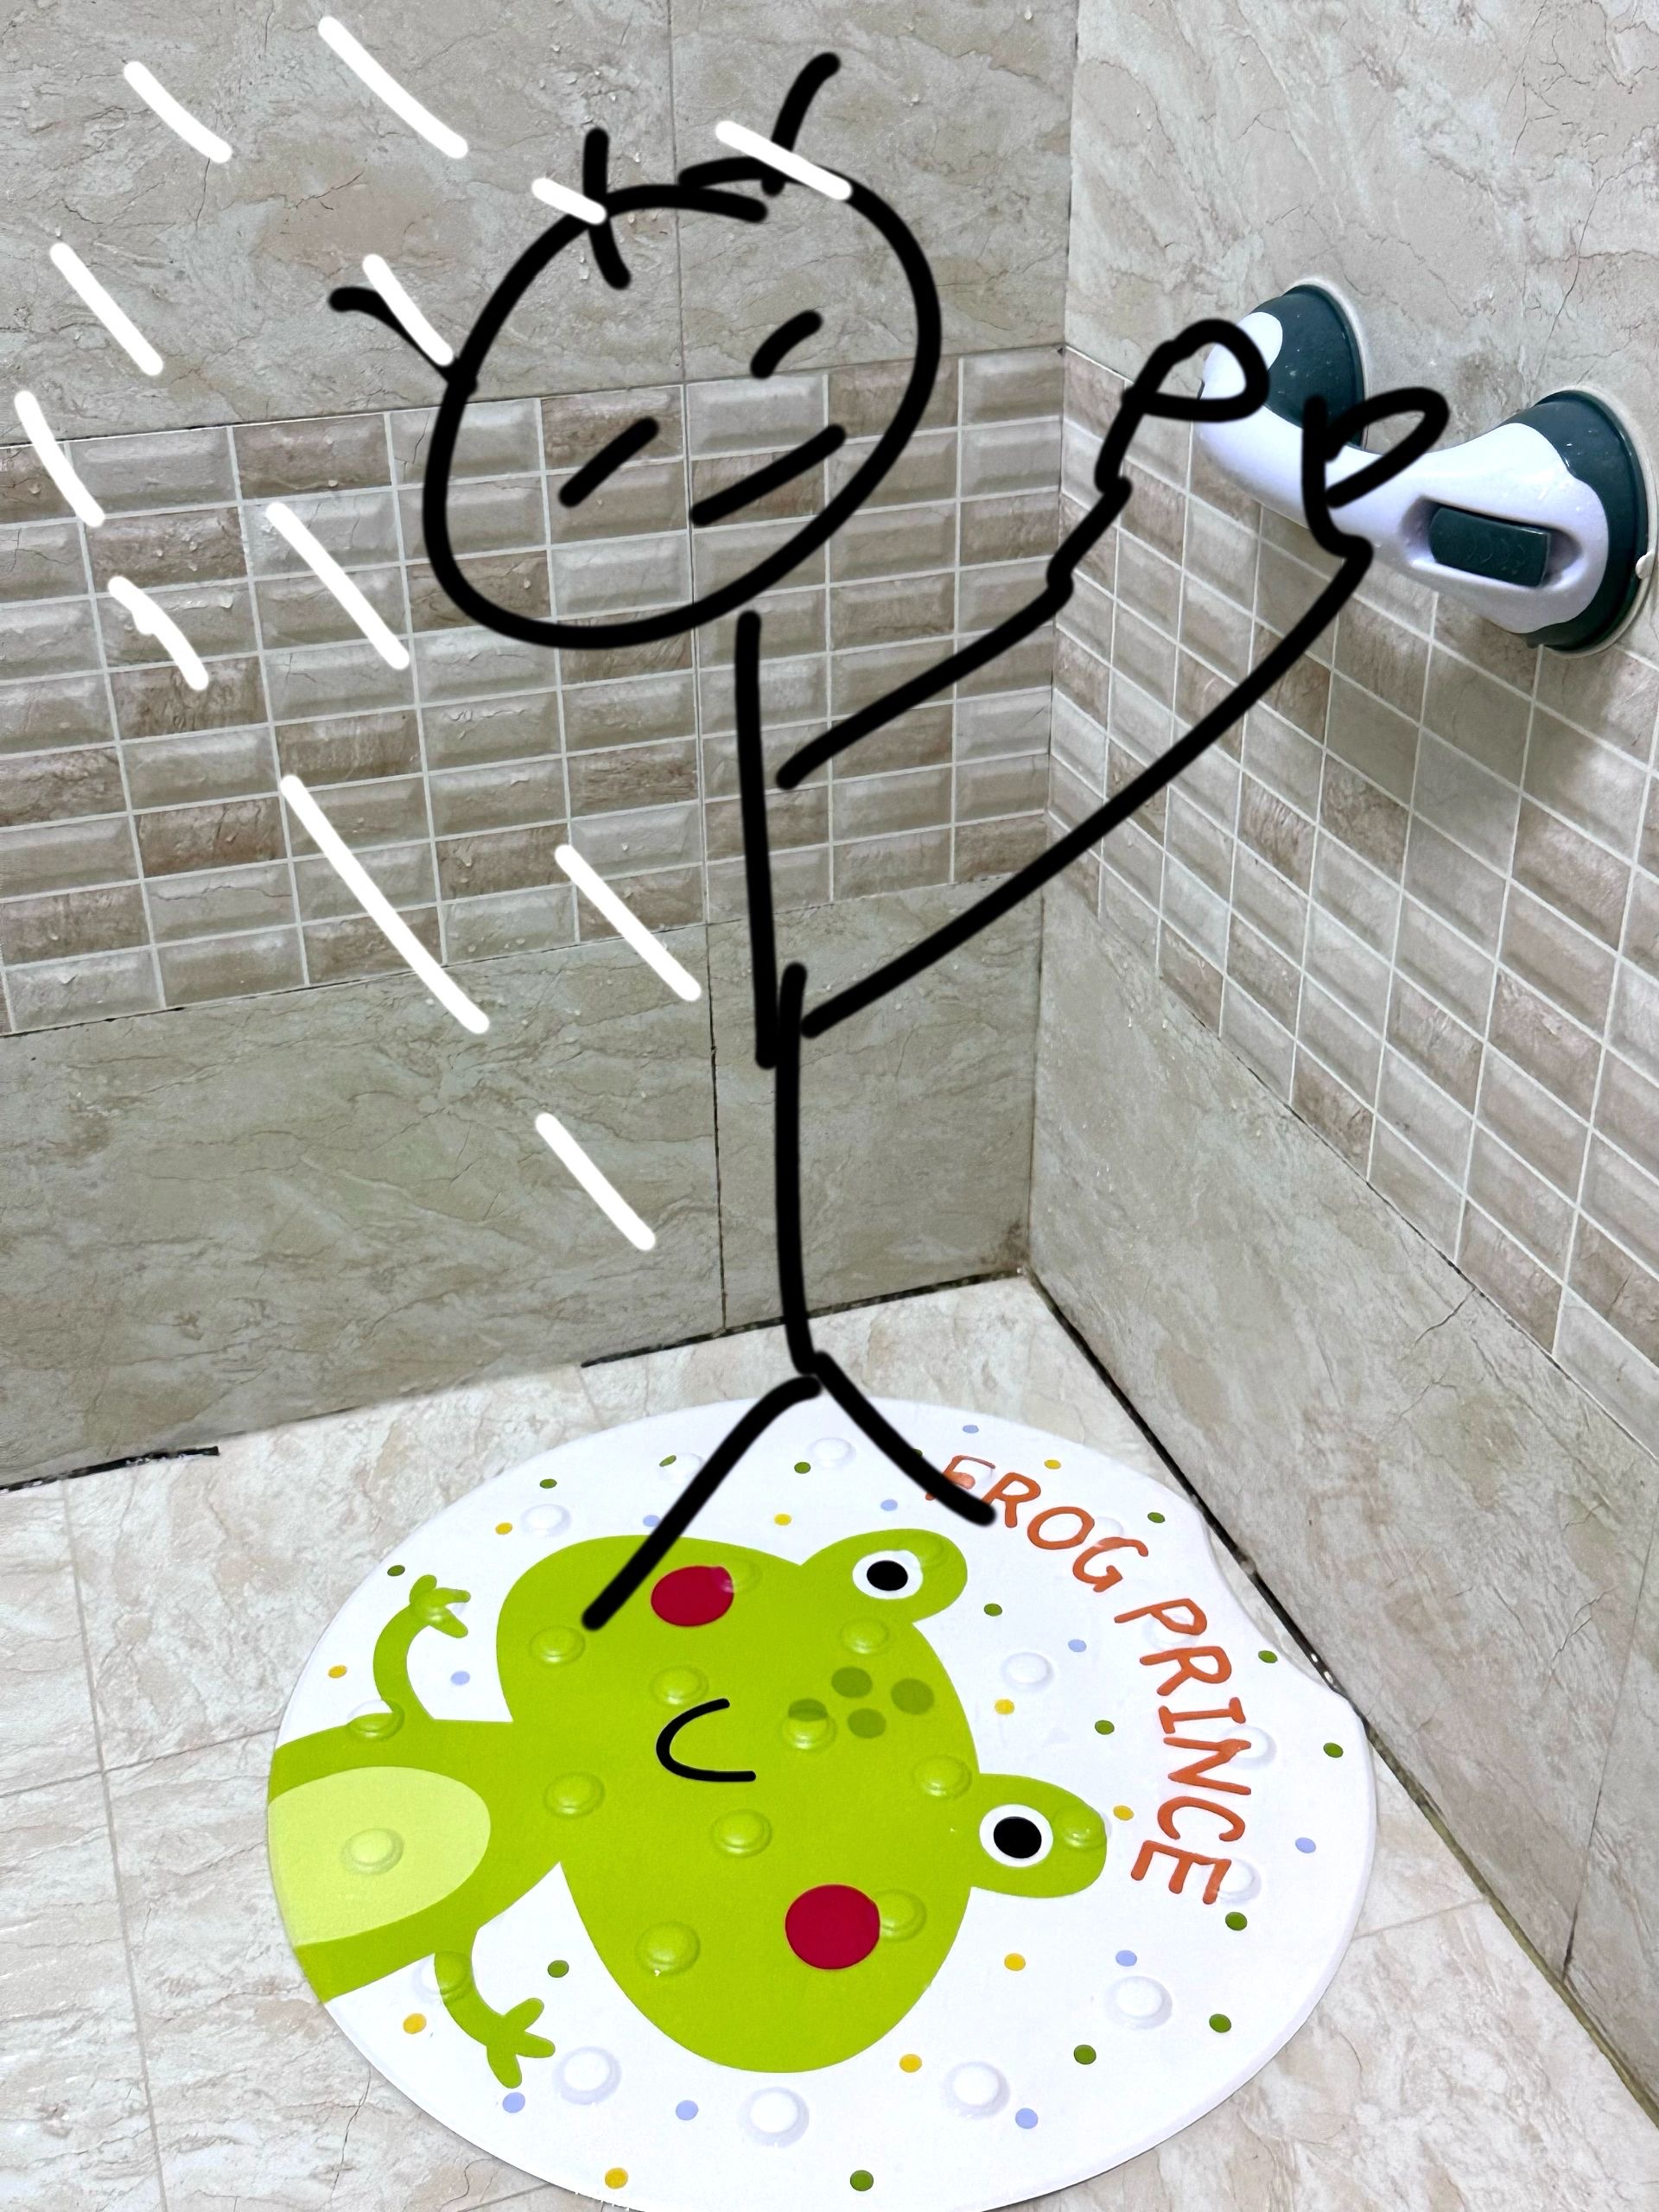 力力猪青蛙圆形浴室防滑垫家用淋浴房吸盘垫卫浴脚垫防滑把手架